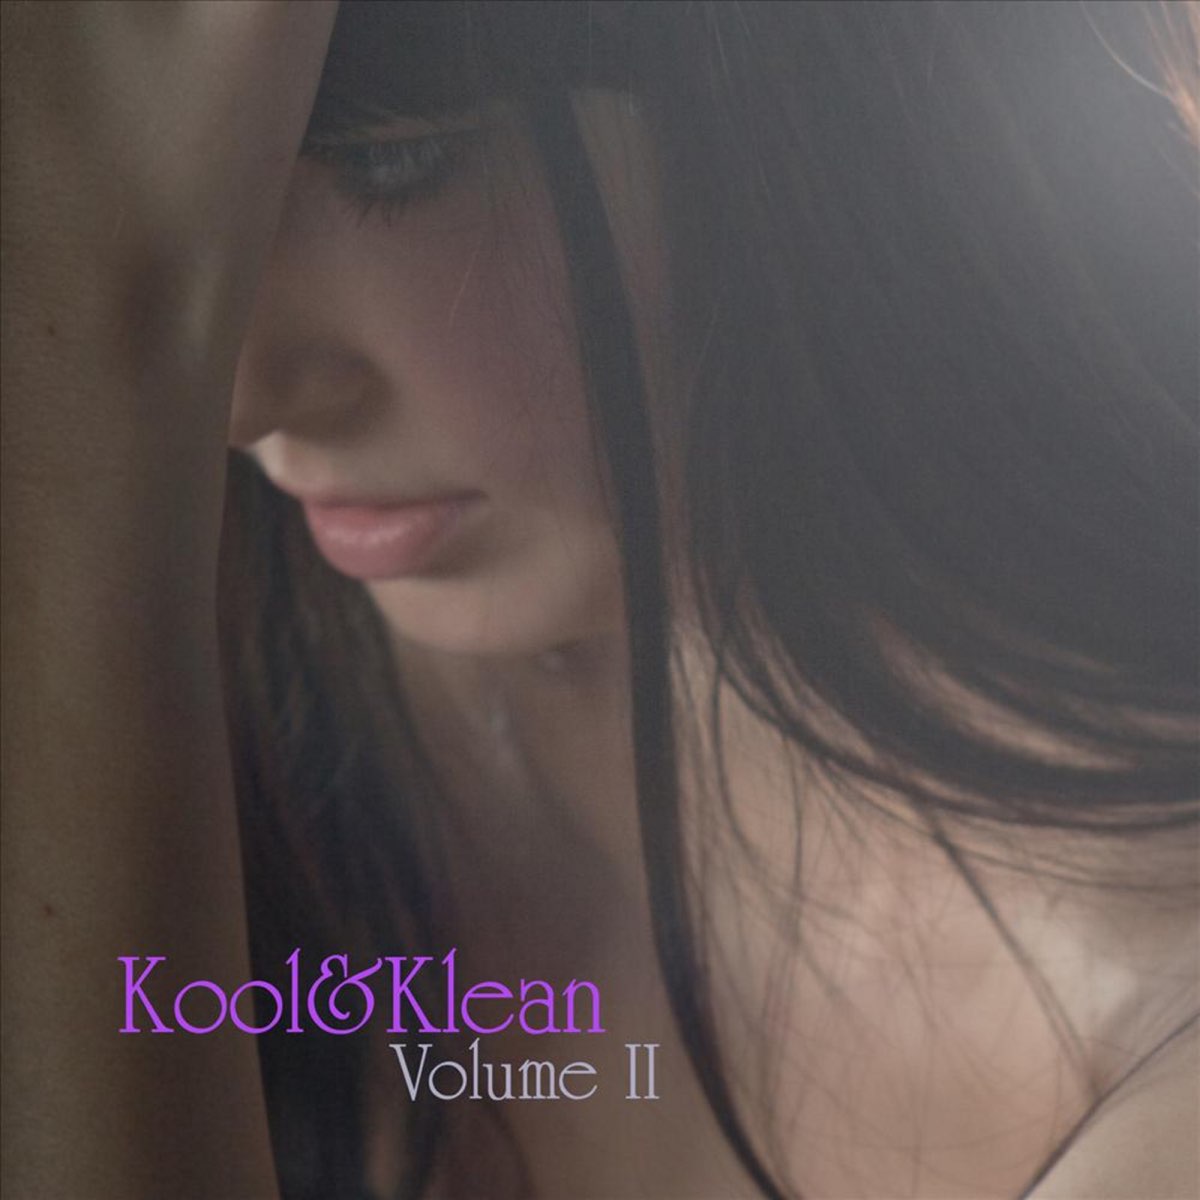 Volume II by Kool&Klean on Apple Music